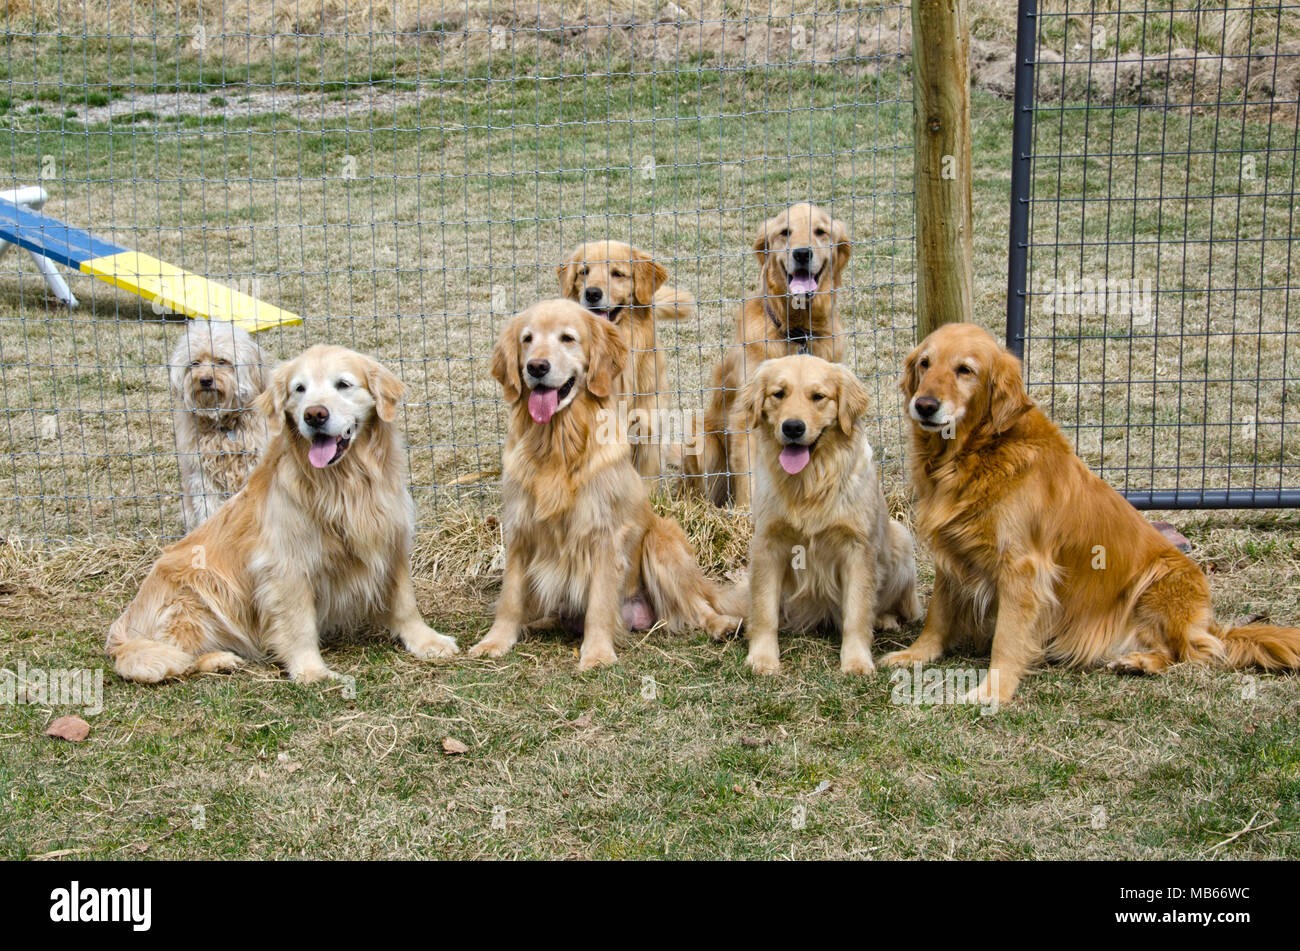 Sechs Golden Retriever sitzen geduldig mit ihrem Freund, einem liebenswerten Mischling Angenommen Hund. Stockfoto